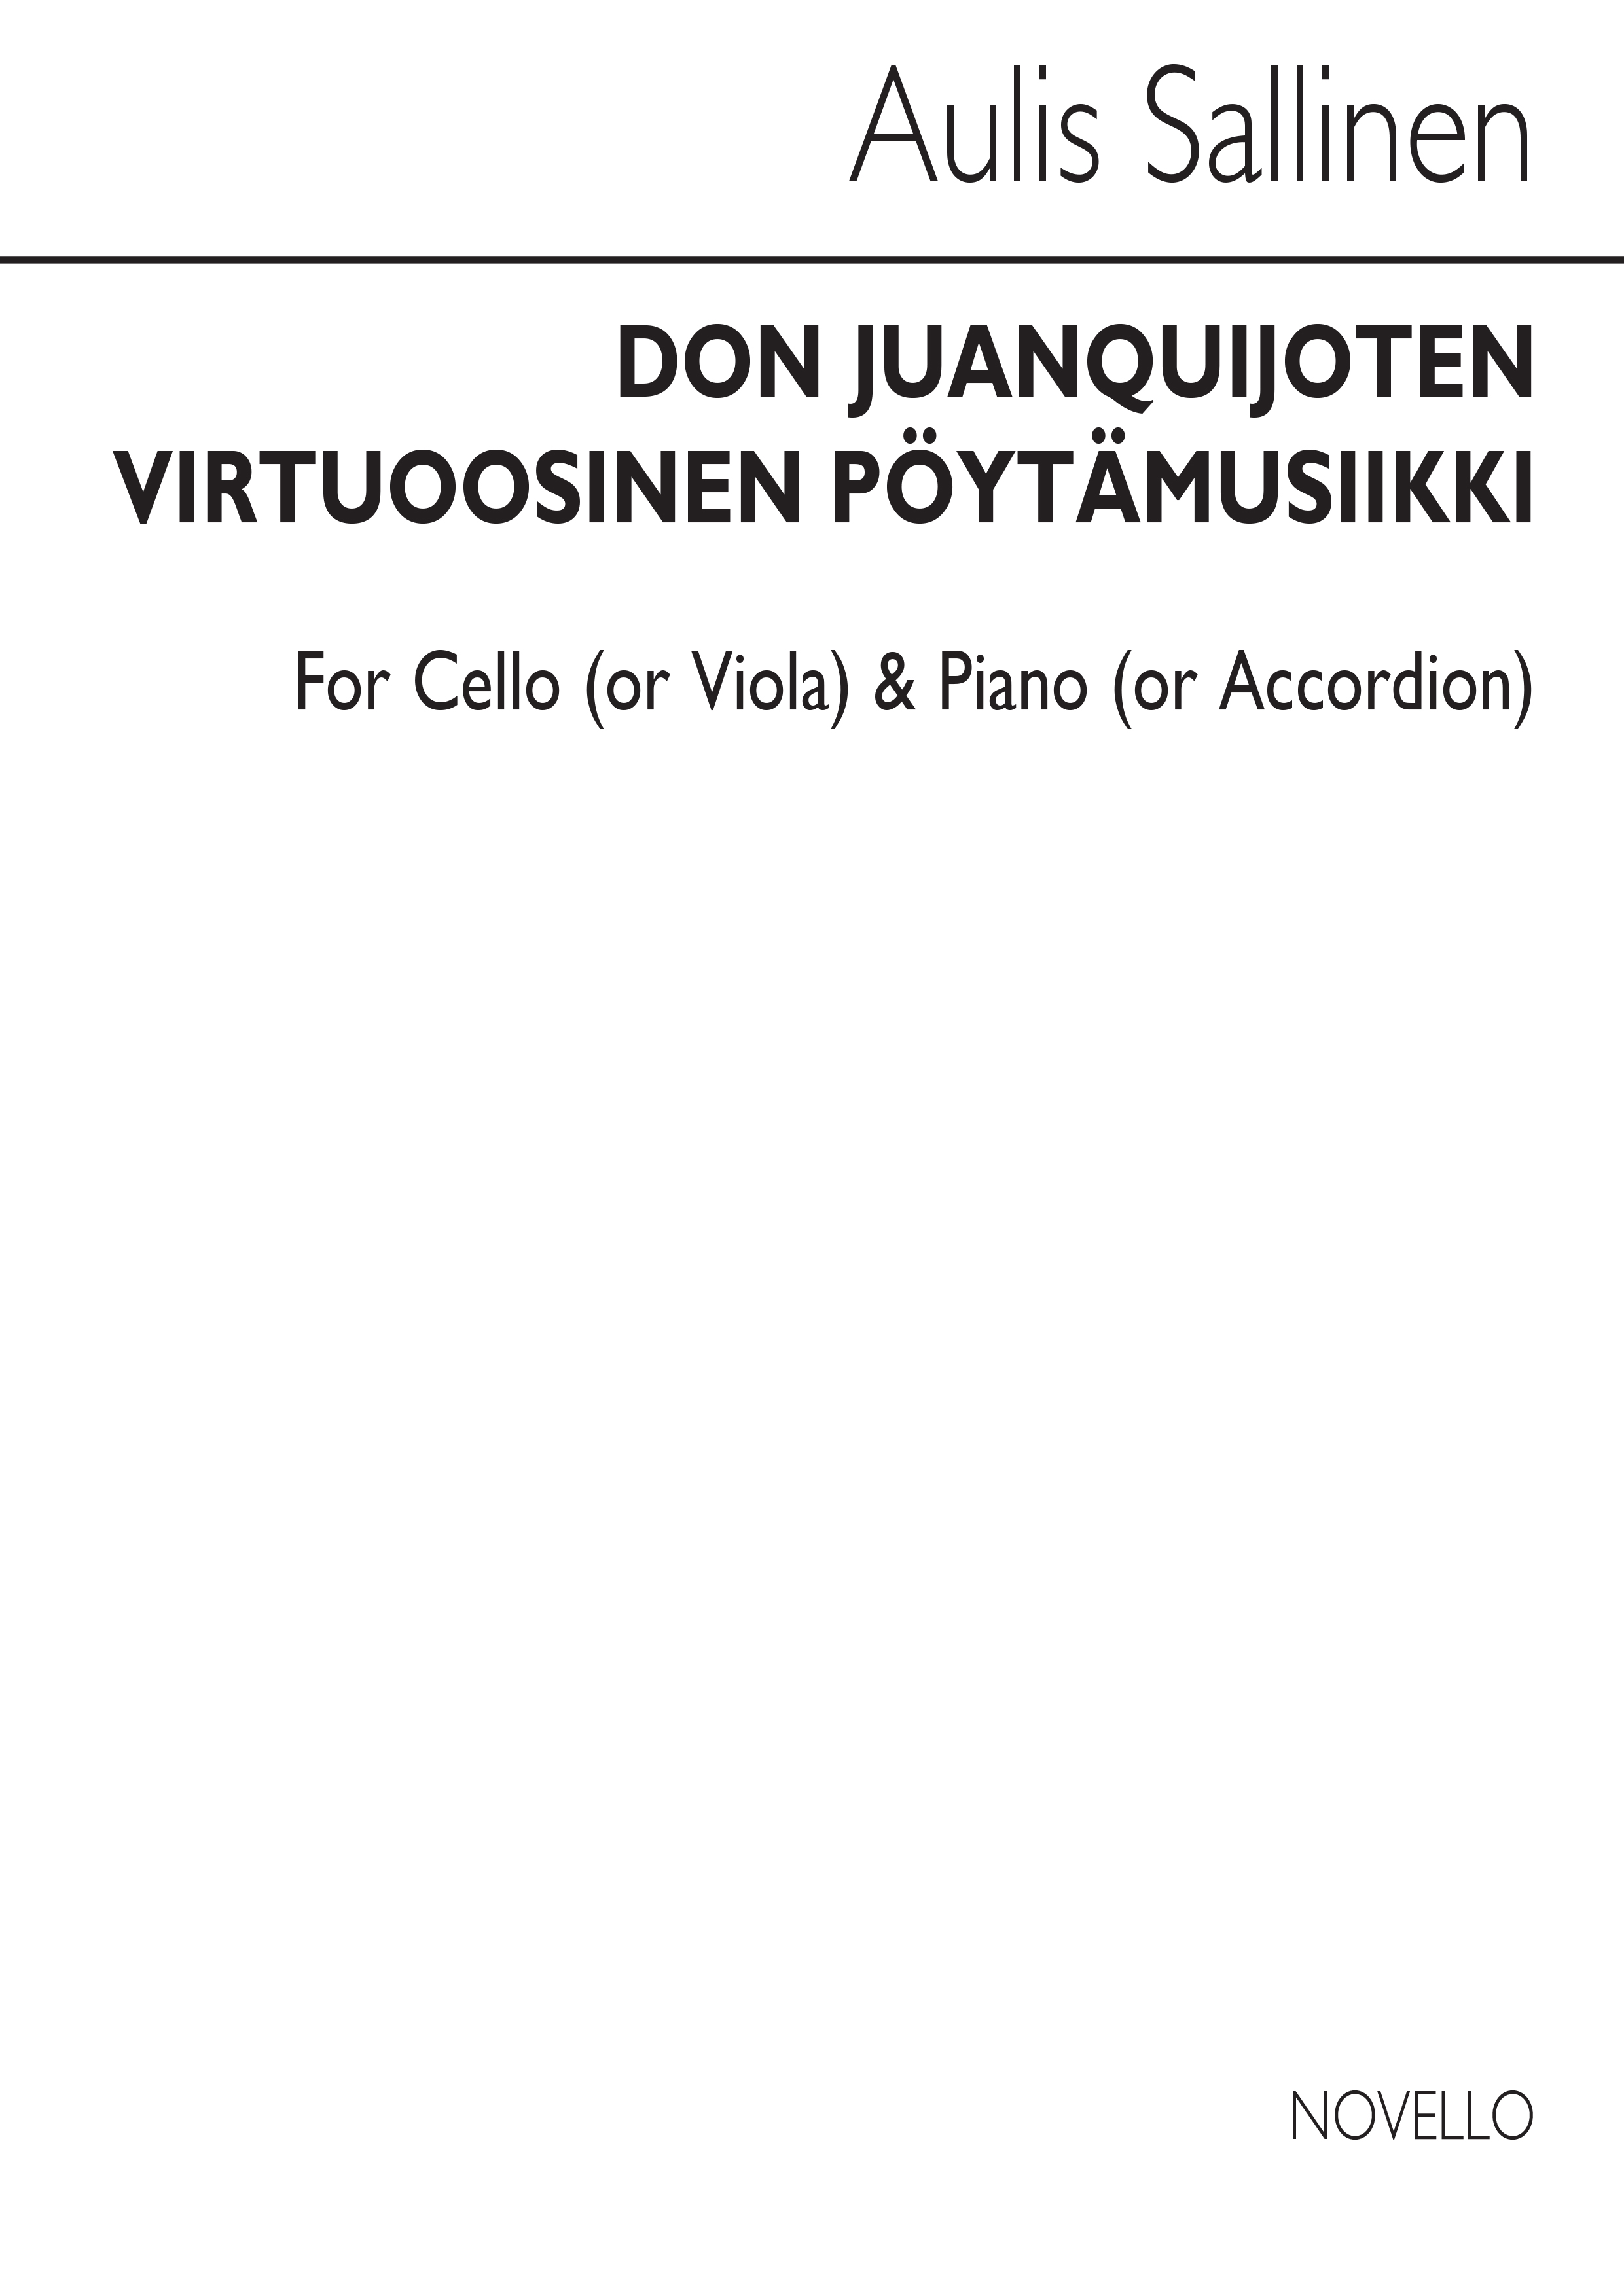 Aulis Sallinen: Don Juanquijoten Virtuoosinen Pytmusiikki: Ensemble: Score and